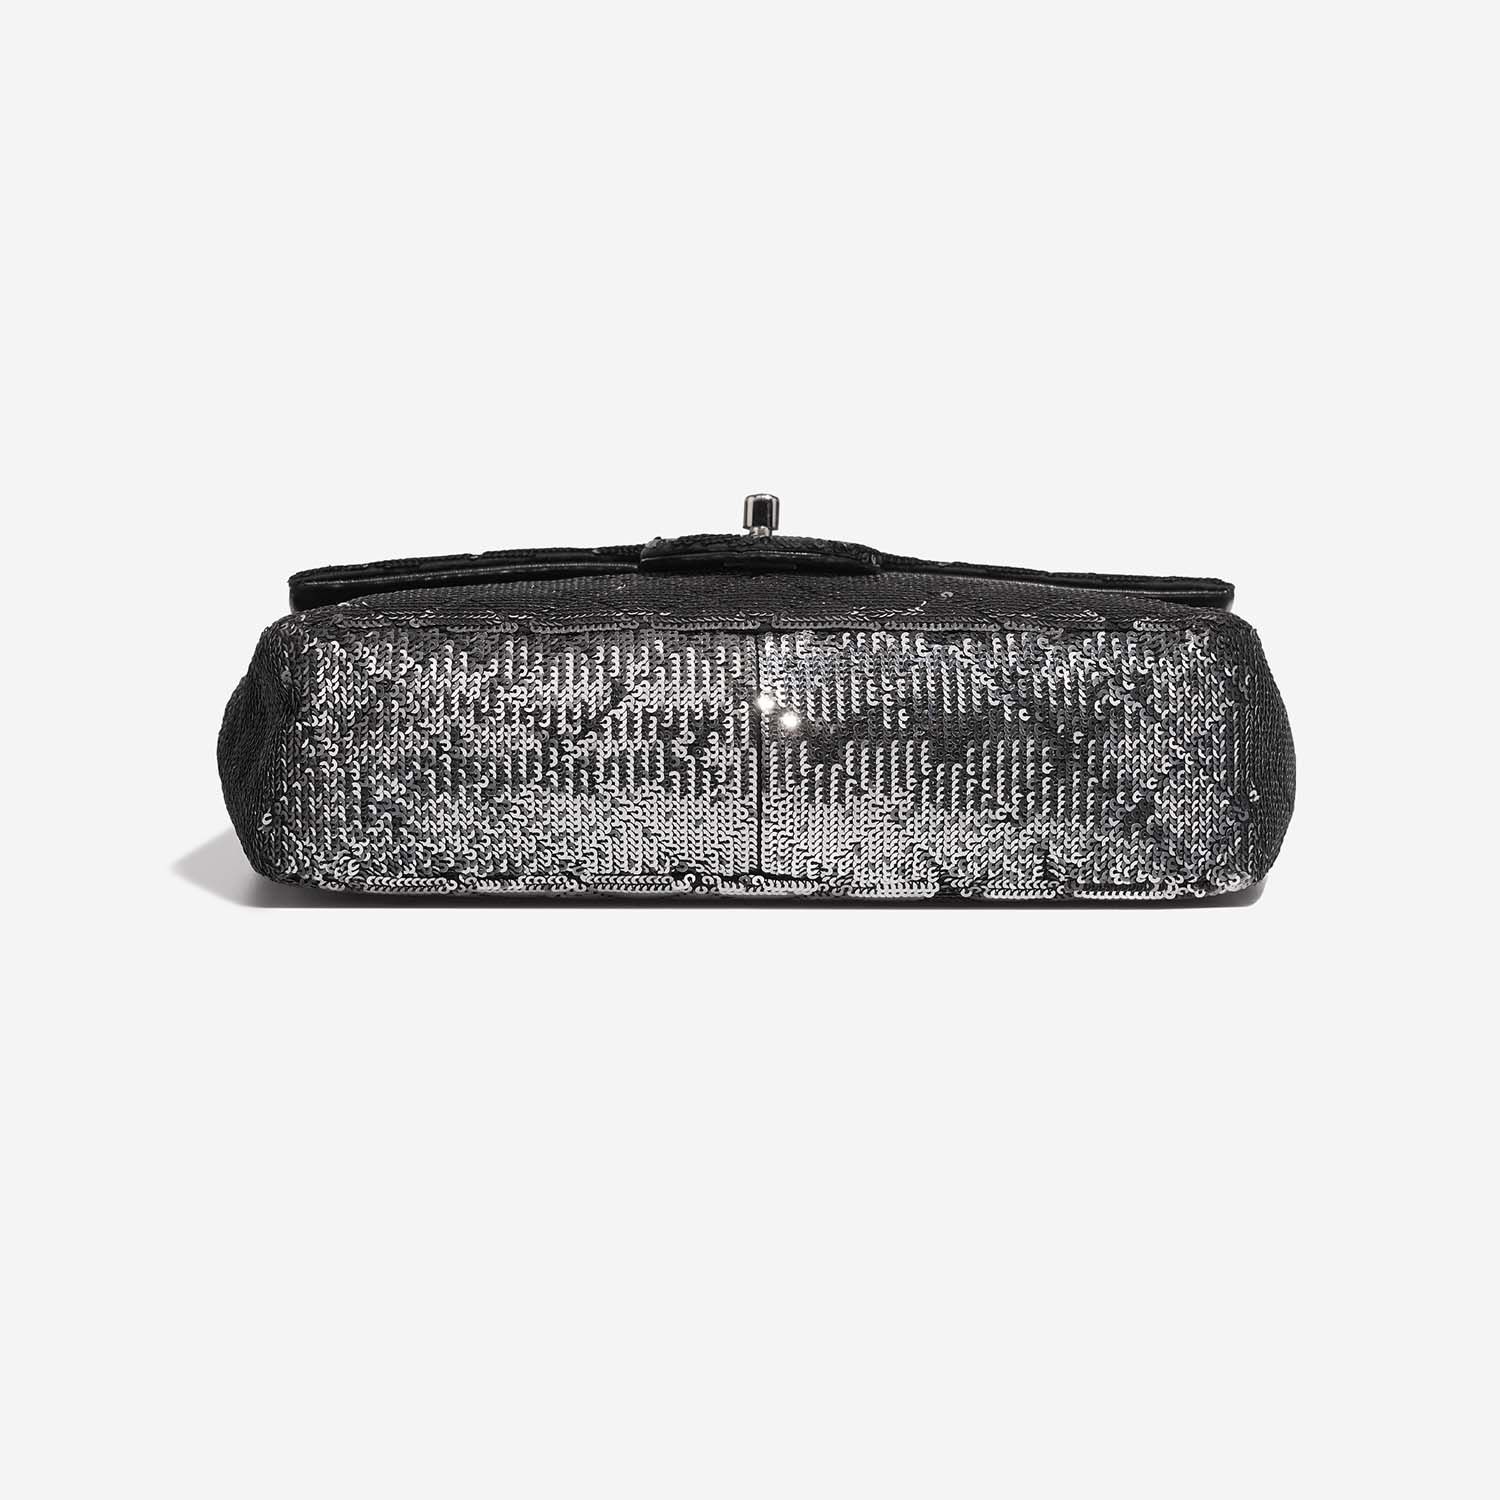 Chanel Timeless Medium Black-Silver Bottom | Verkaufen Sie Ihre Designer-Tasche auf Saclab.com